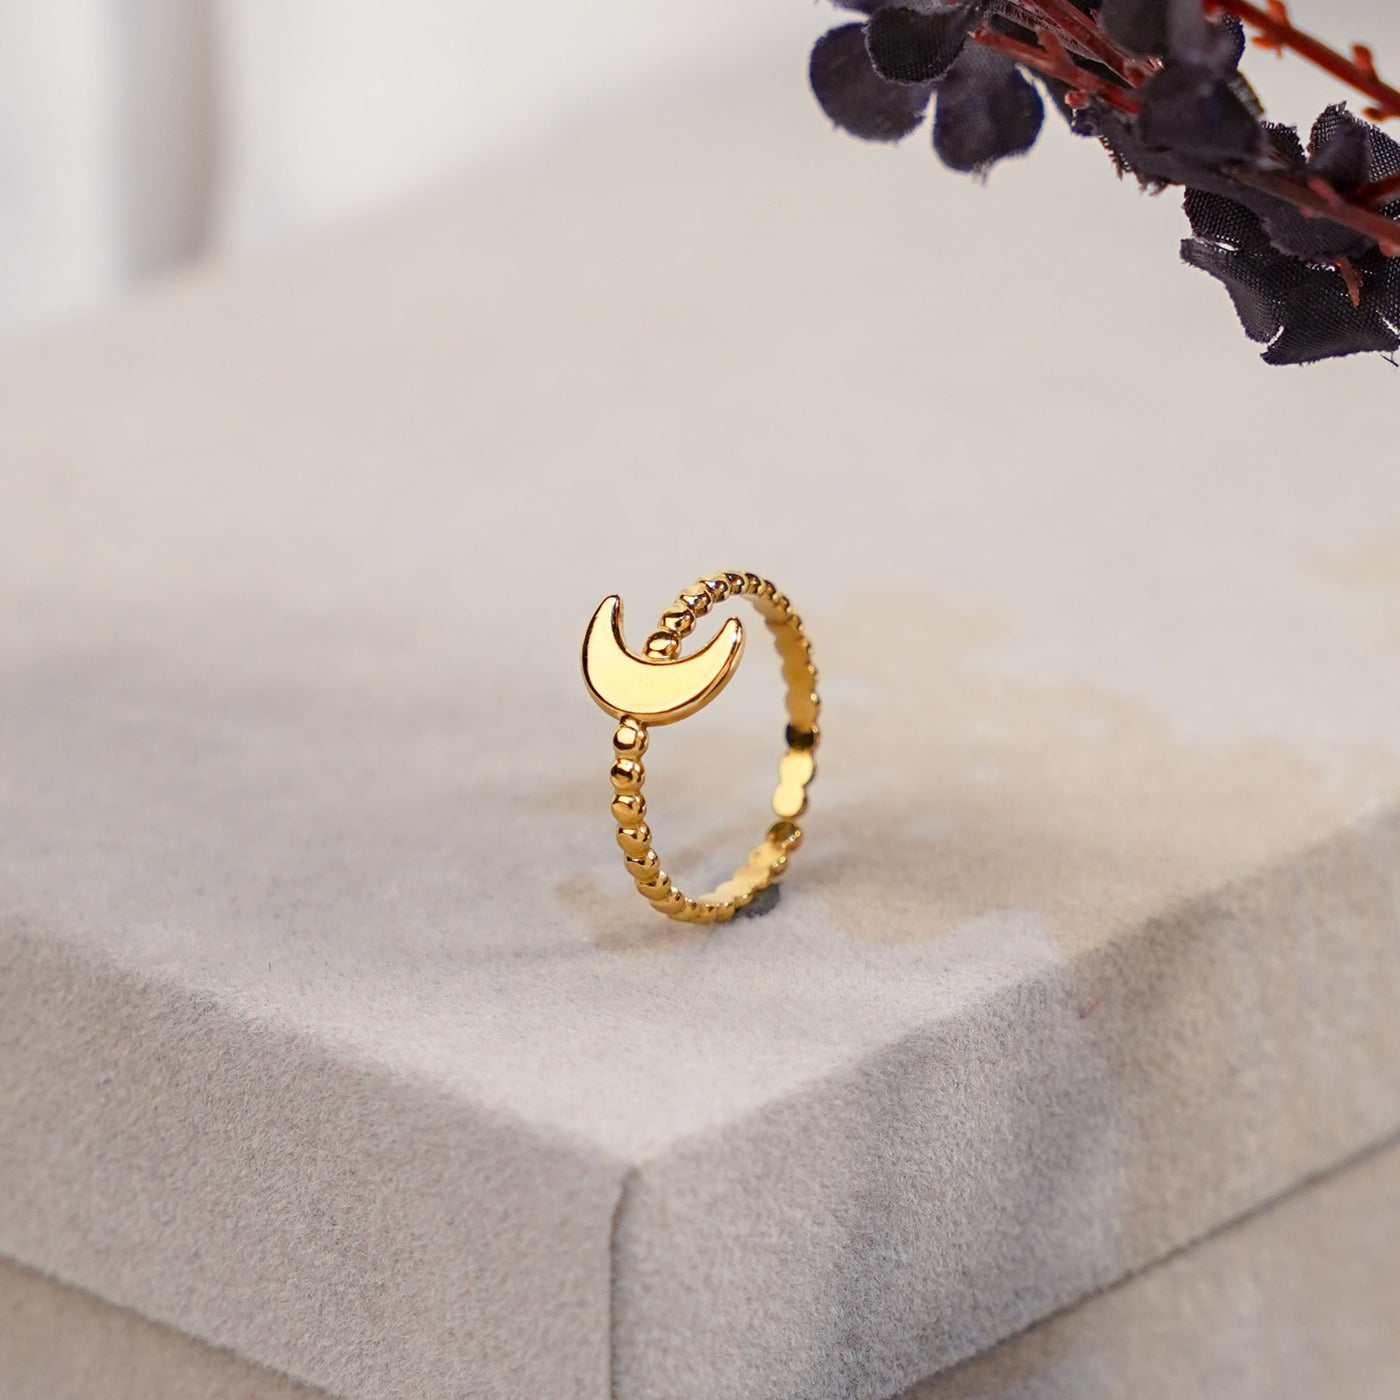 Zeus Moon Ring